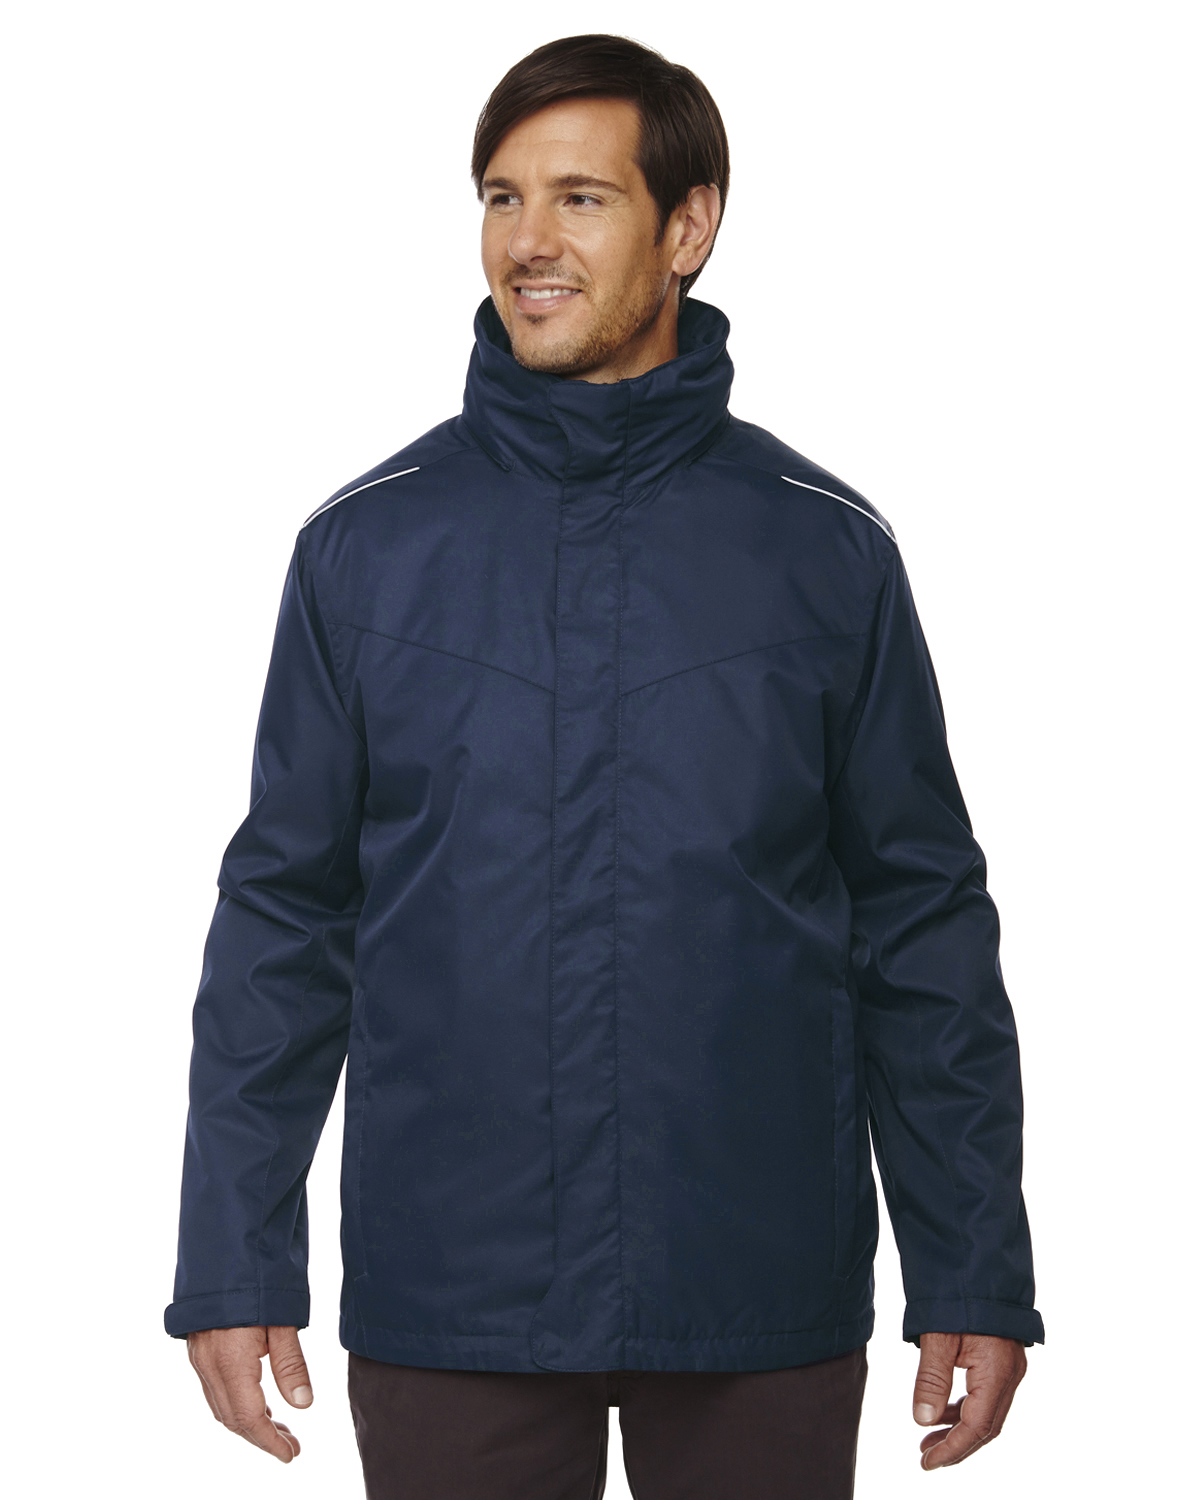 Men's 3-IN-1 Jacket with Fleece Liner